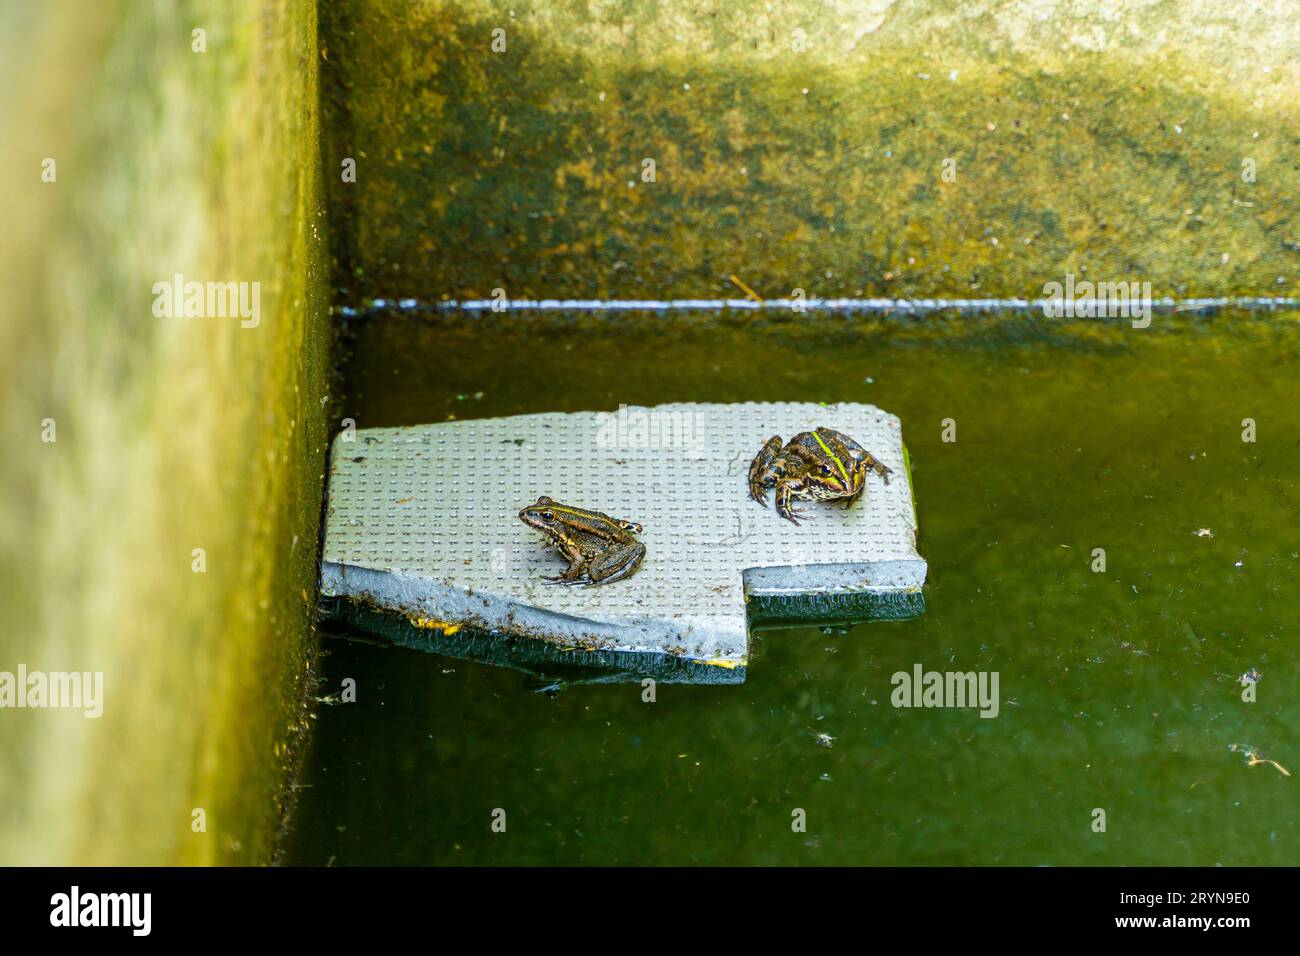 Zwei Seefrösche sitzen auf einem schwimmenden Stück extrudiertem Schaum. Frösche in einem stagnierenden Teich, der mit Betonwänden eingeschlossen ist. Polystyrolschaumbelastung von Seen Stockfoto